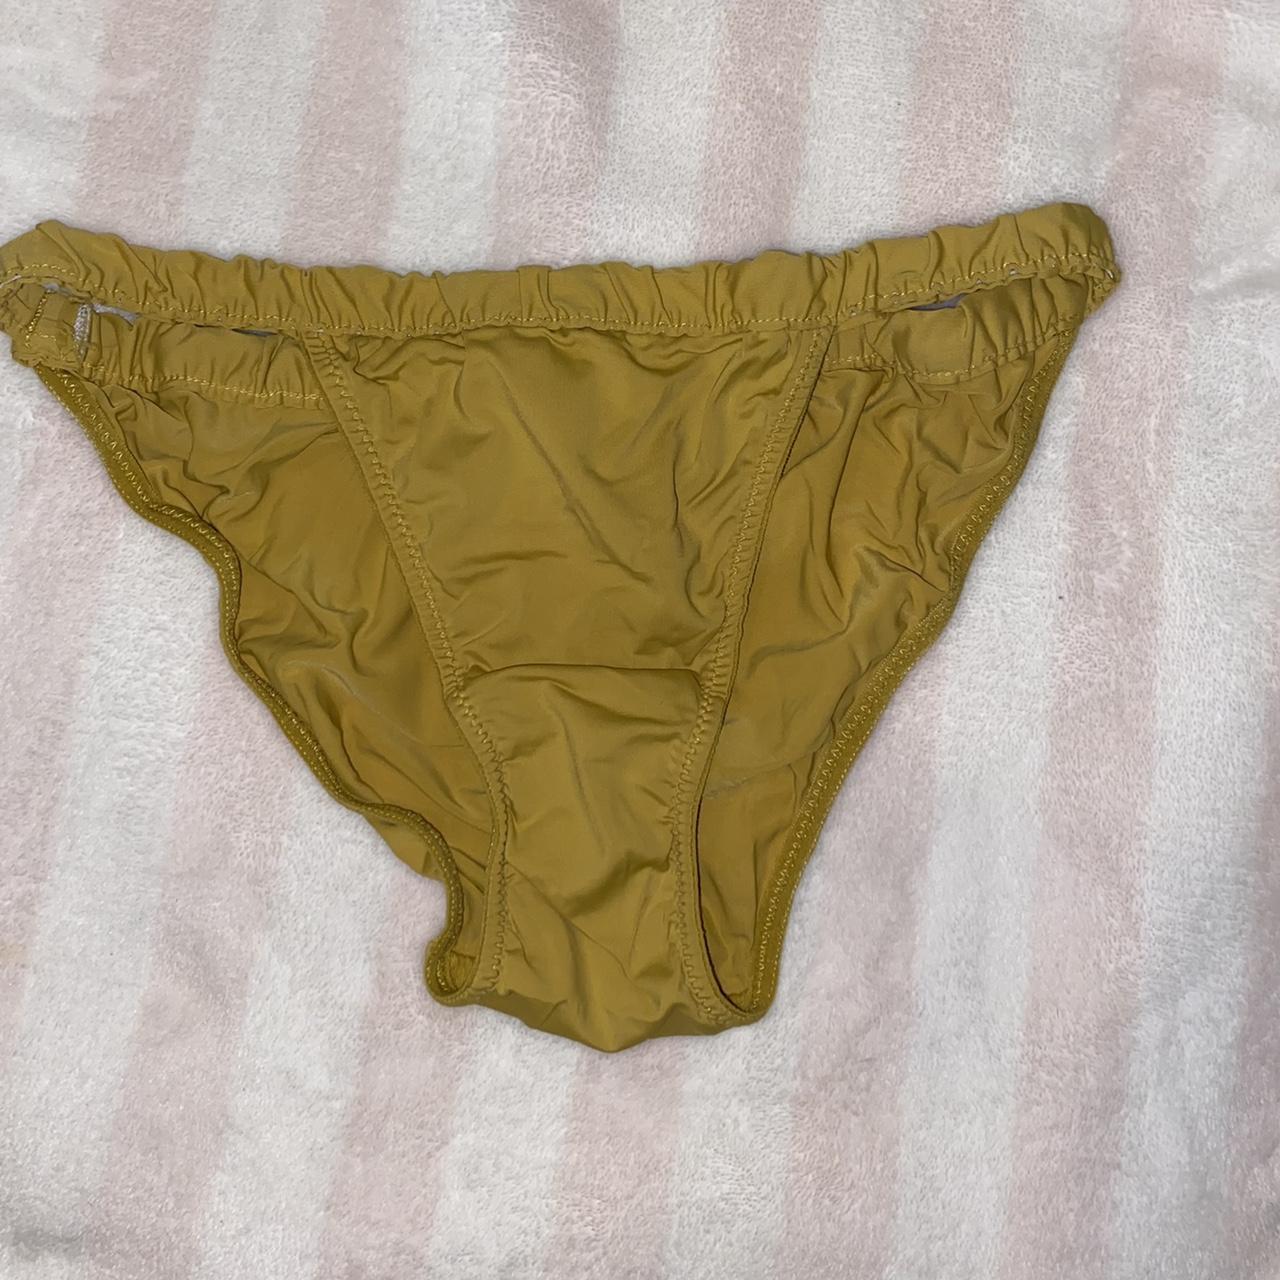 Primark mustard underwear with ruched sides🧡 size S.... - Depop